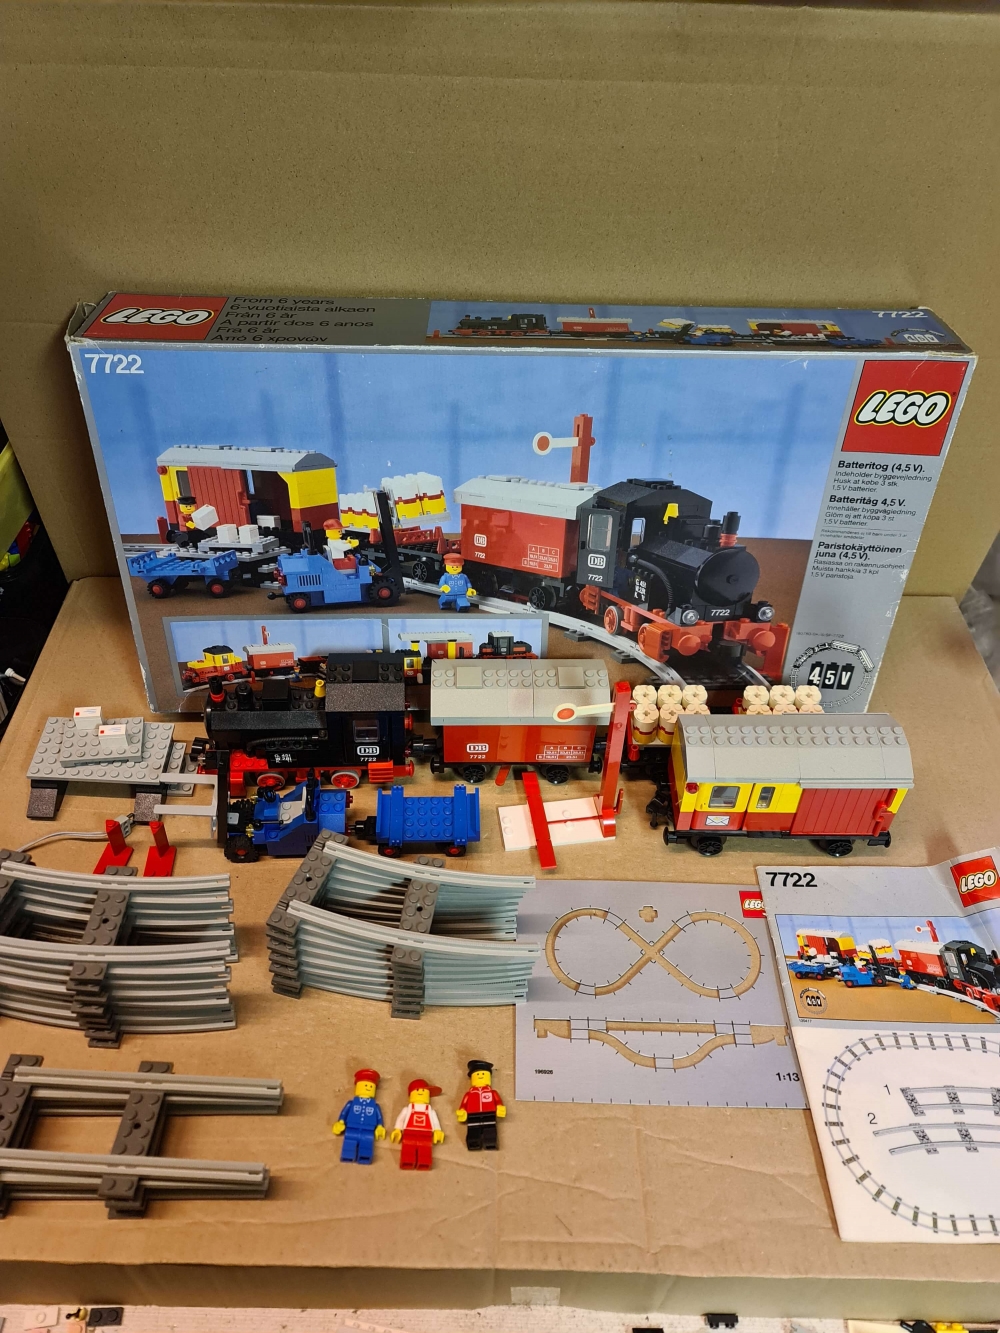 Sett 7722 fra Lego Train : 4.5V serien.
Meget pent sett.
Komplett med manual og eske.